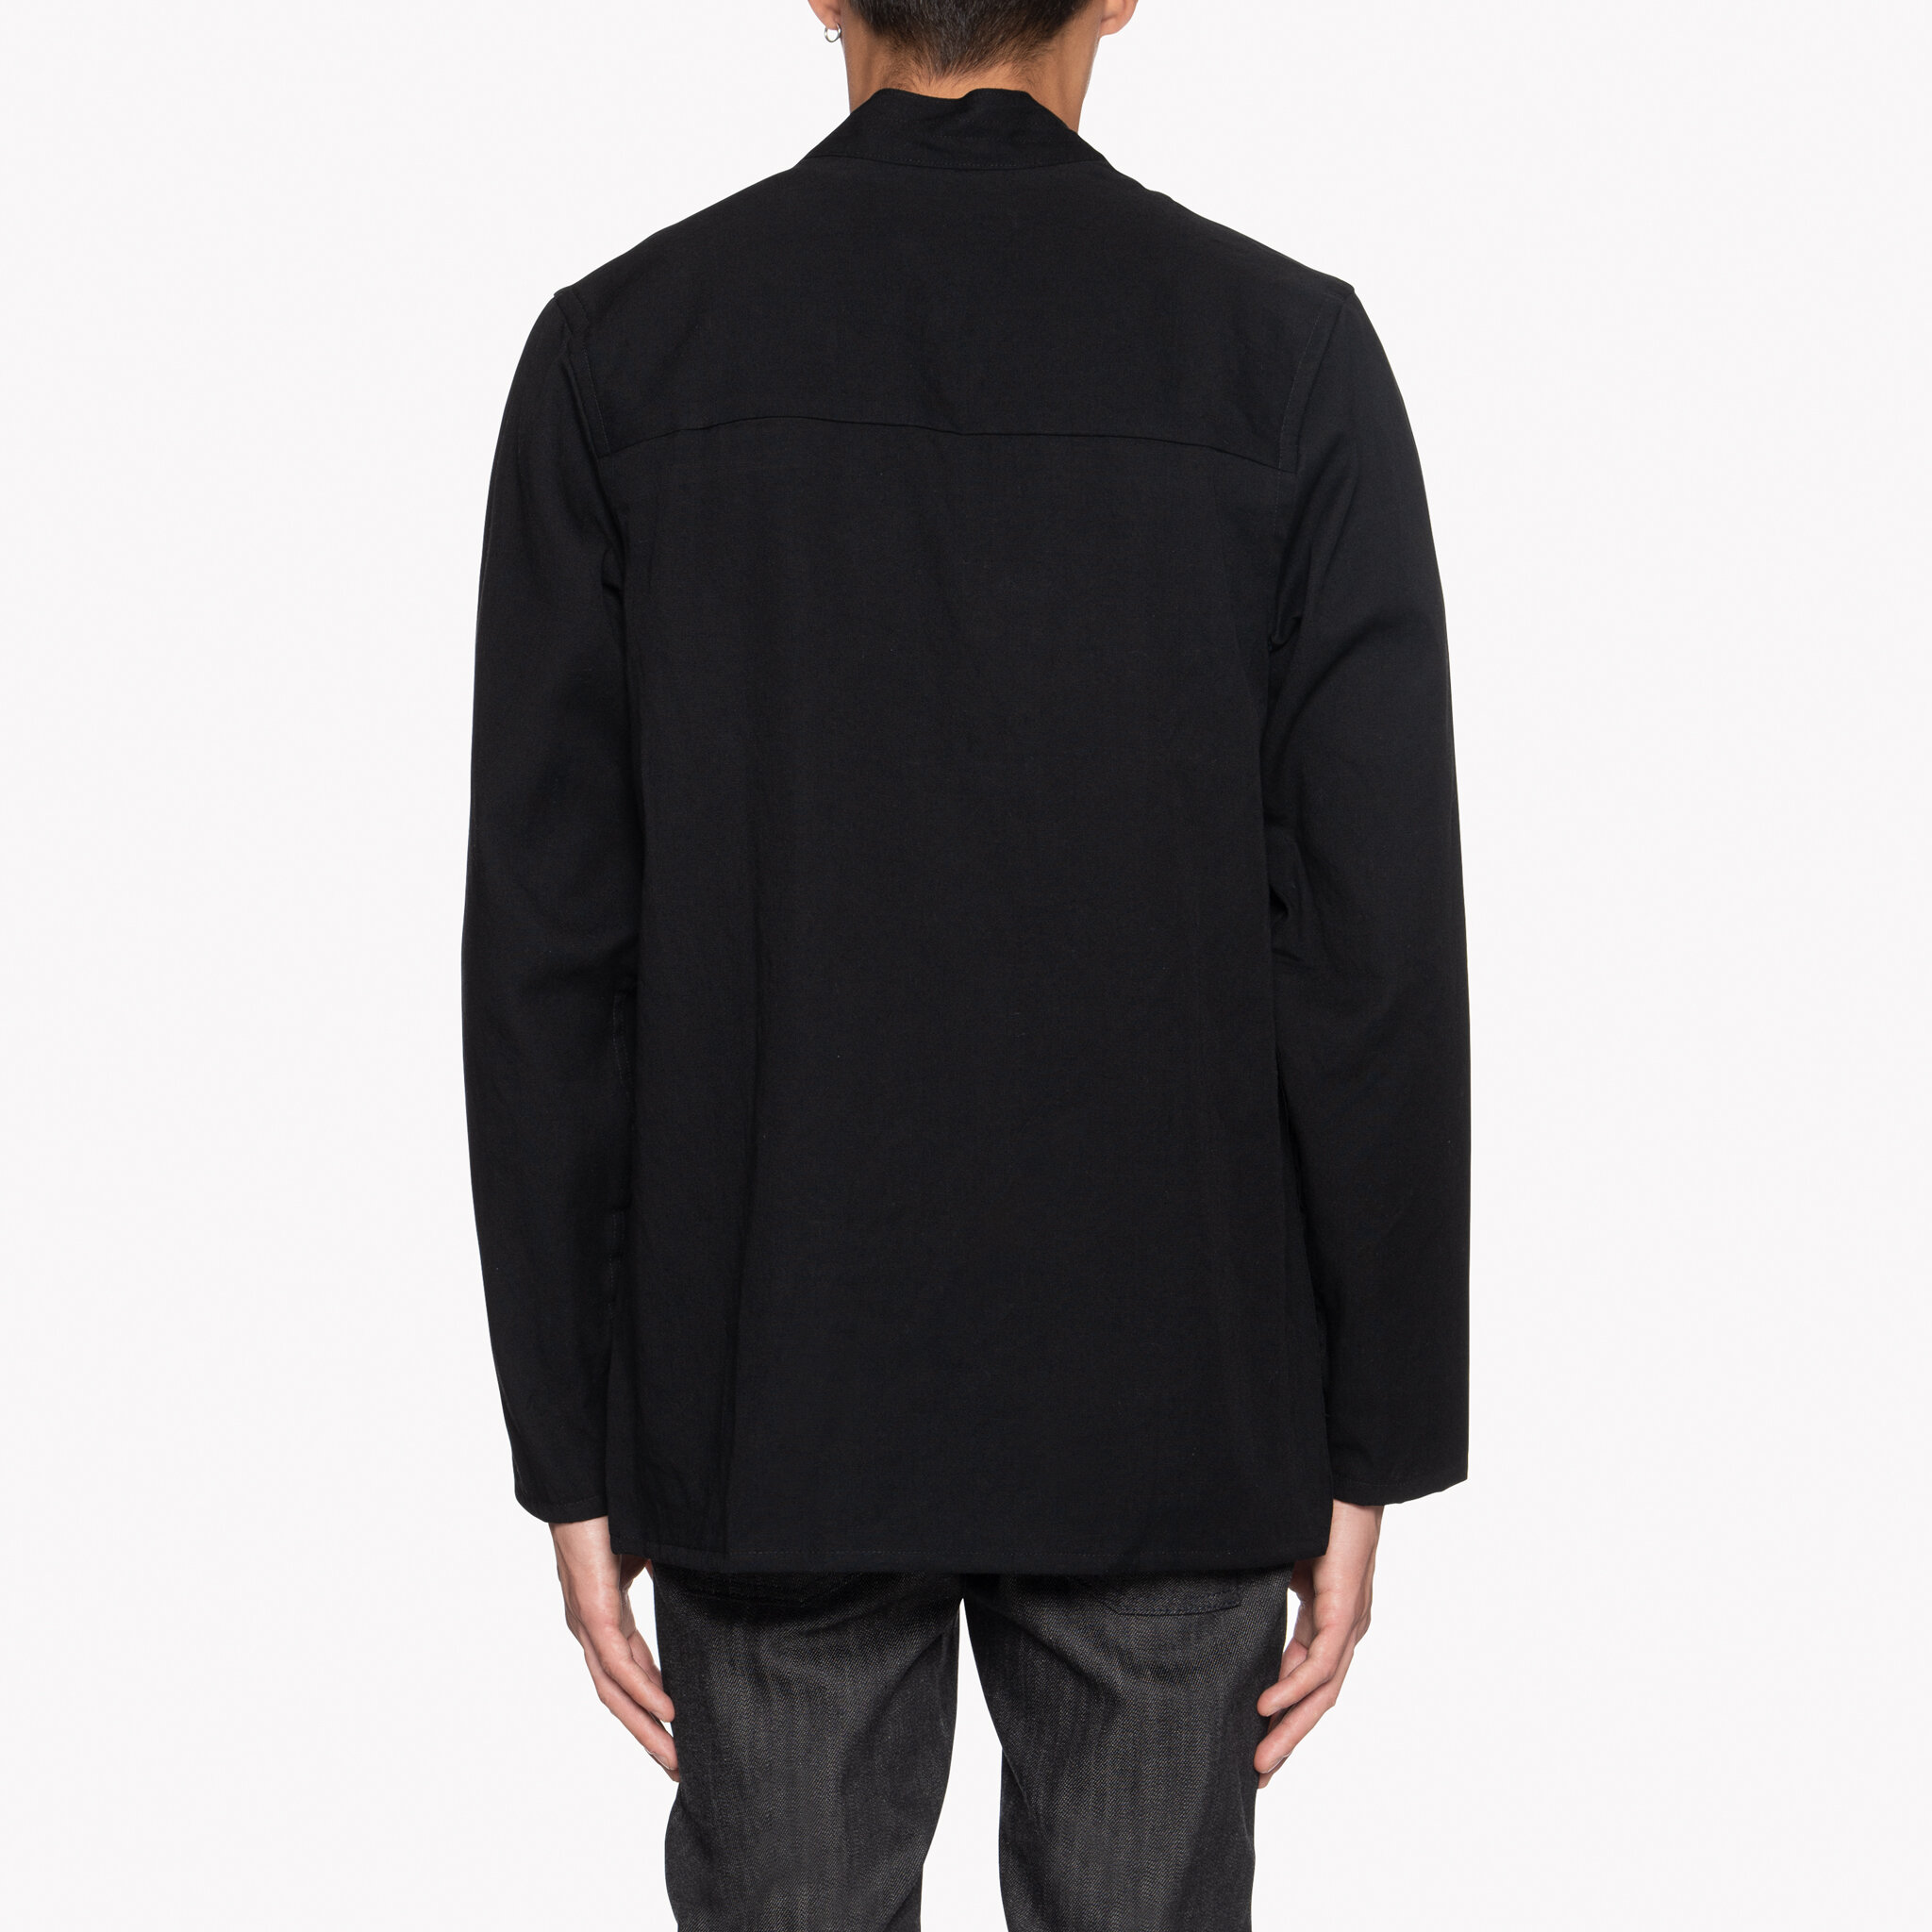  Kimono Shirt - Black Short Slub Denim - back 